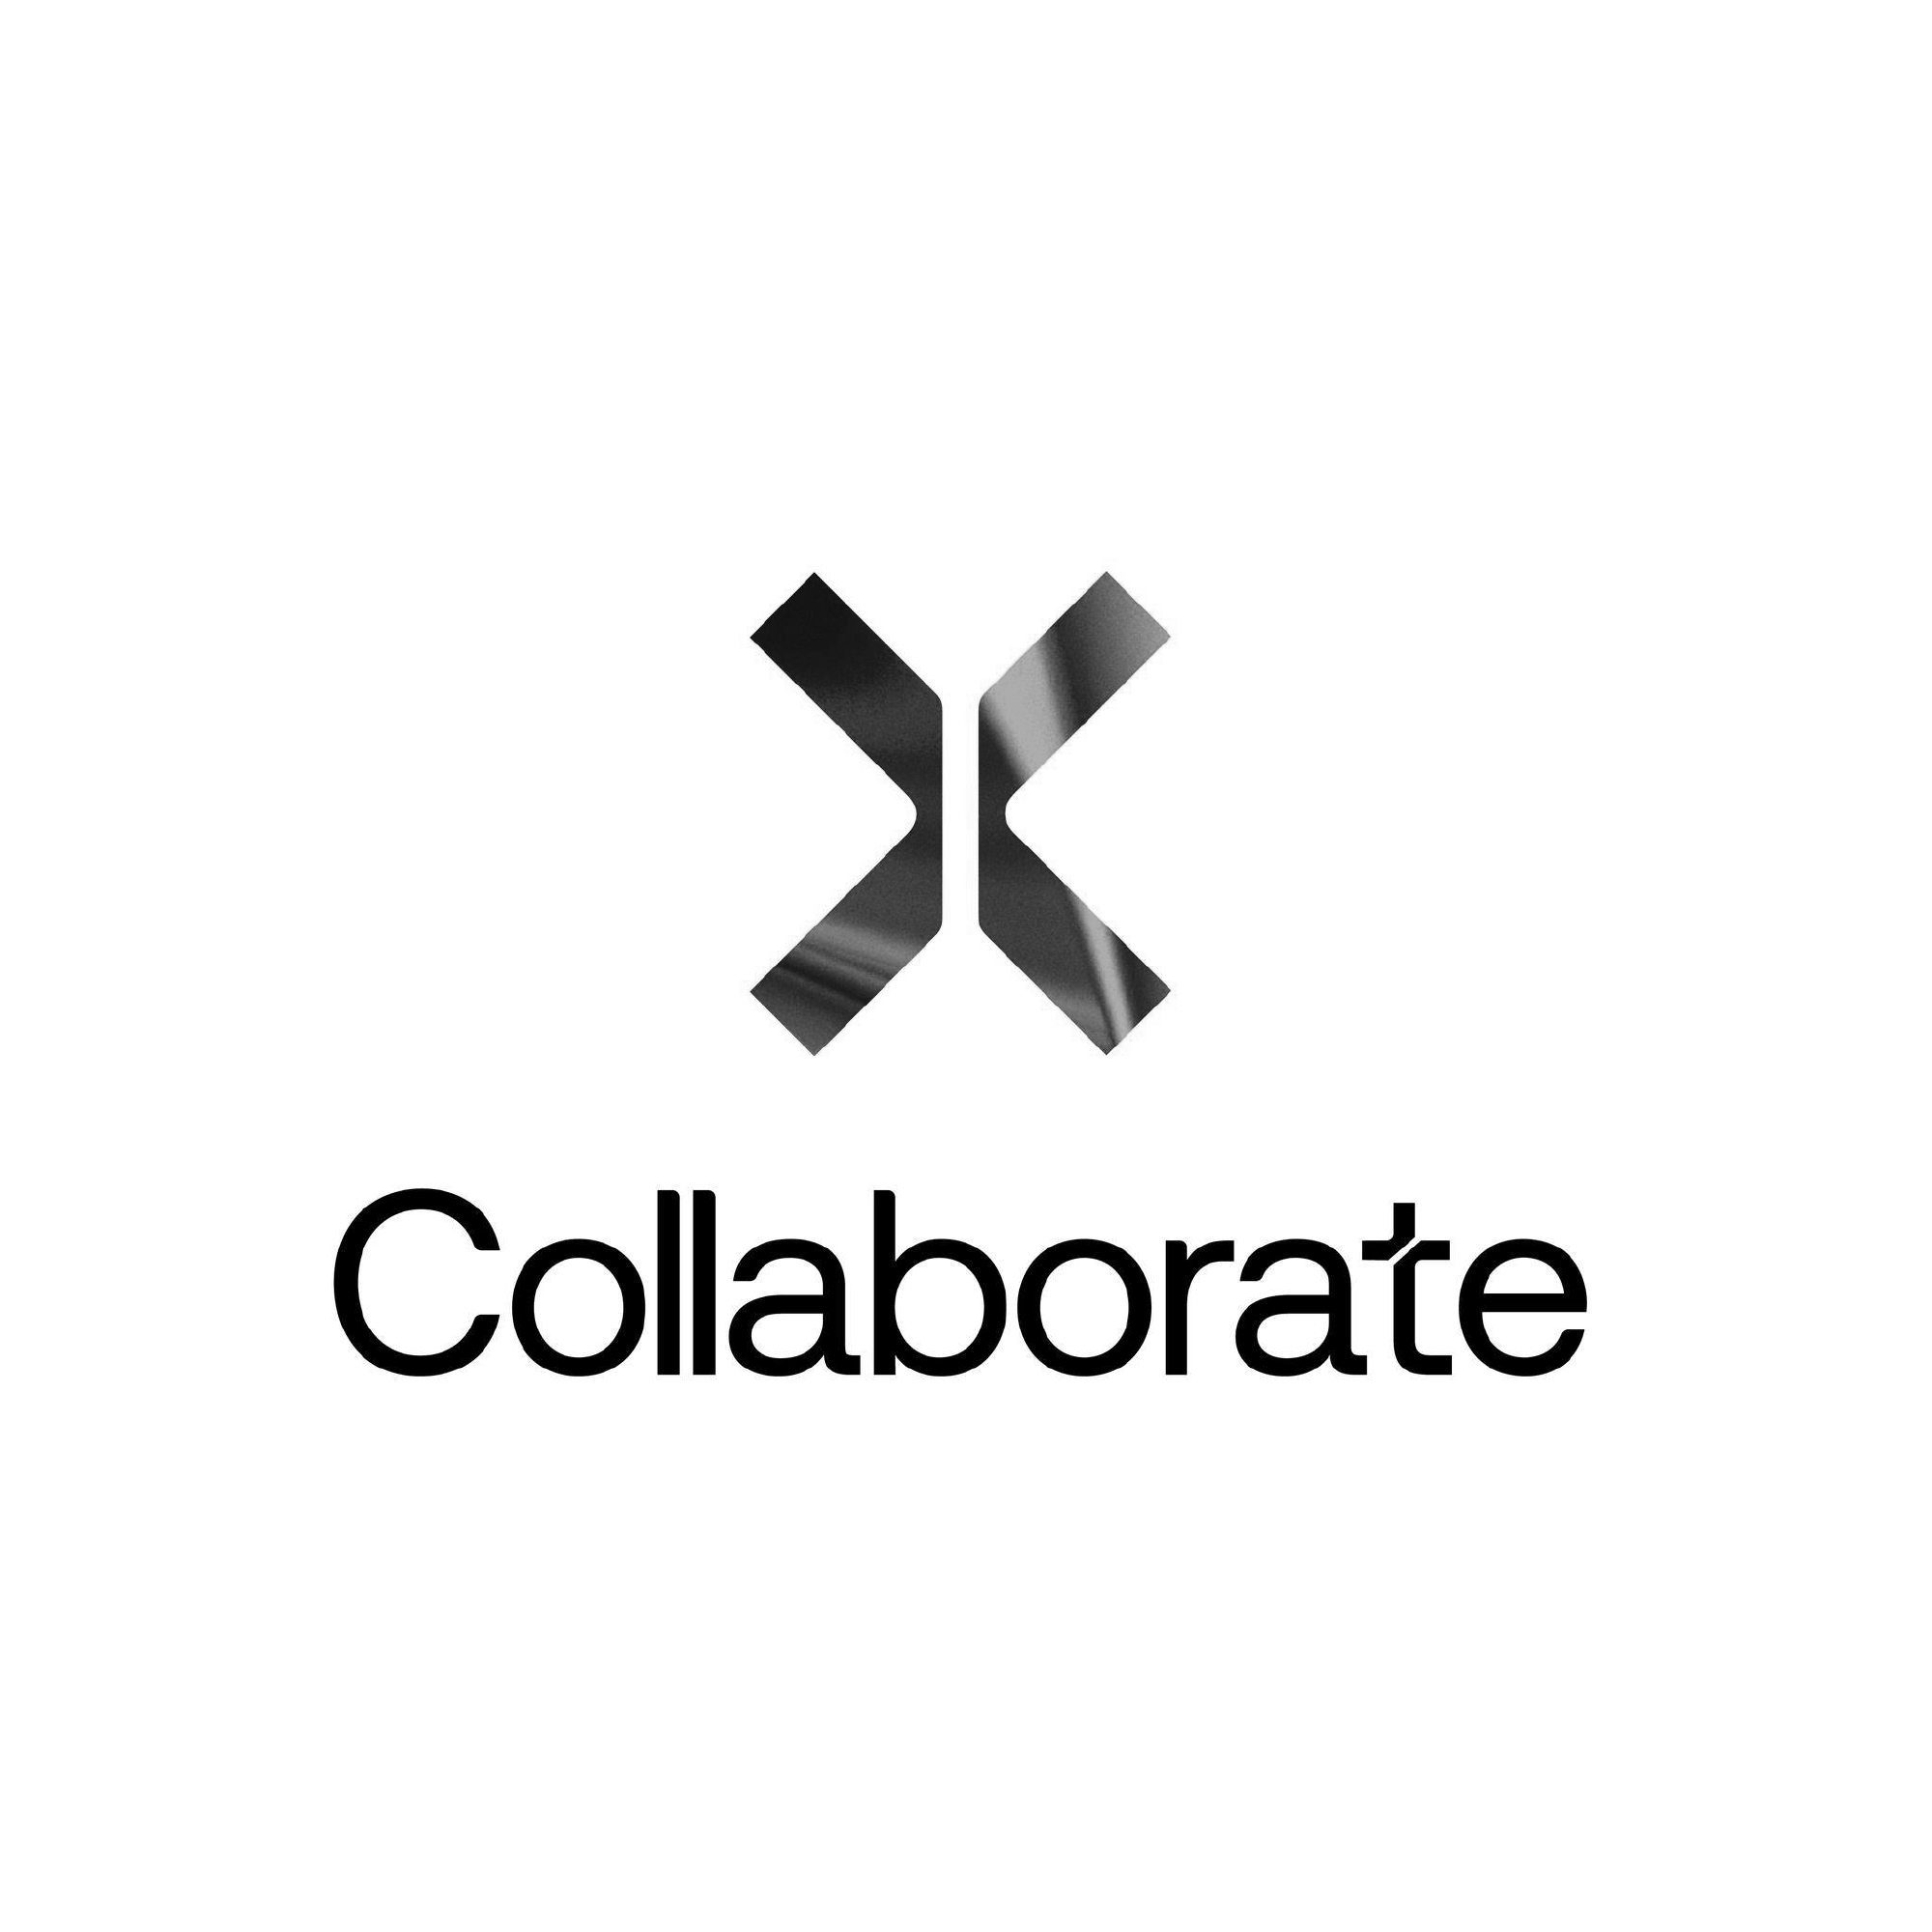 Collaborate (Copy) (Copy) (Copy) (Copy)